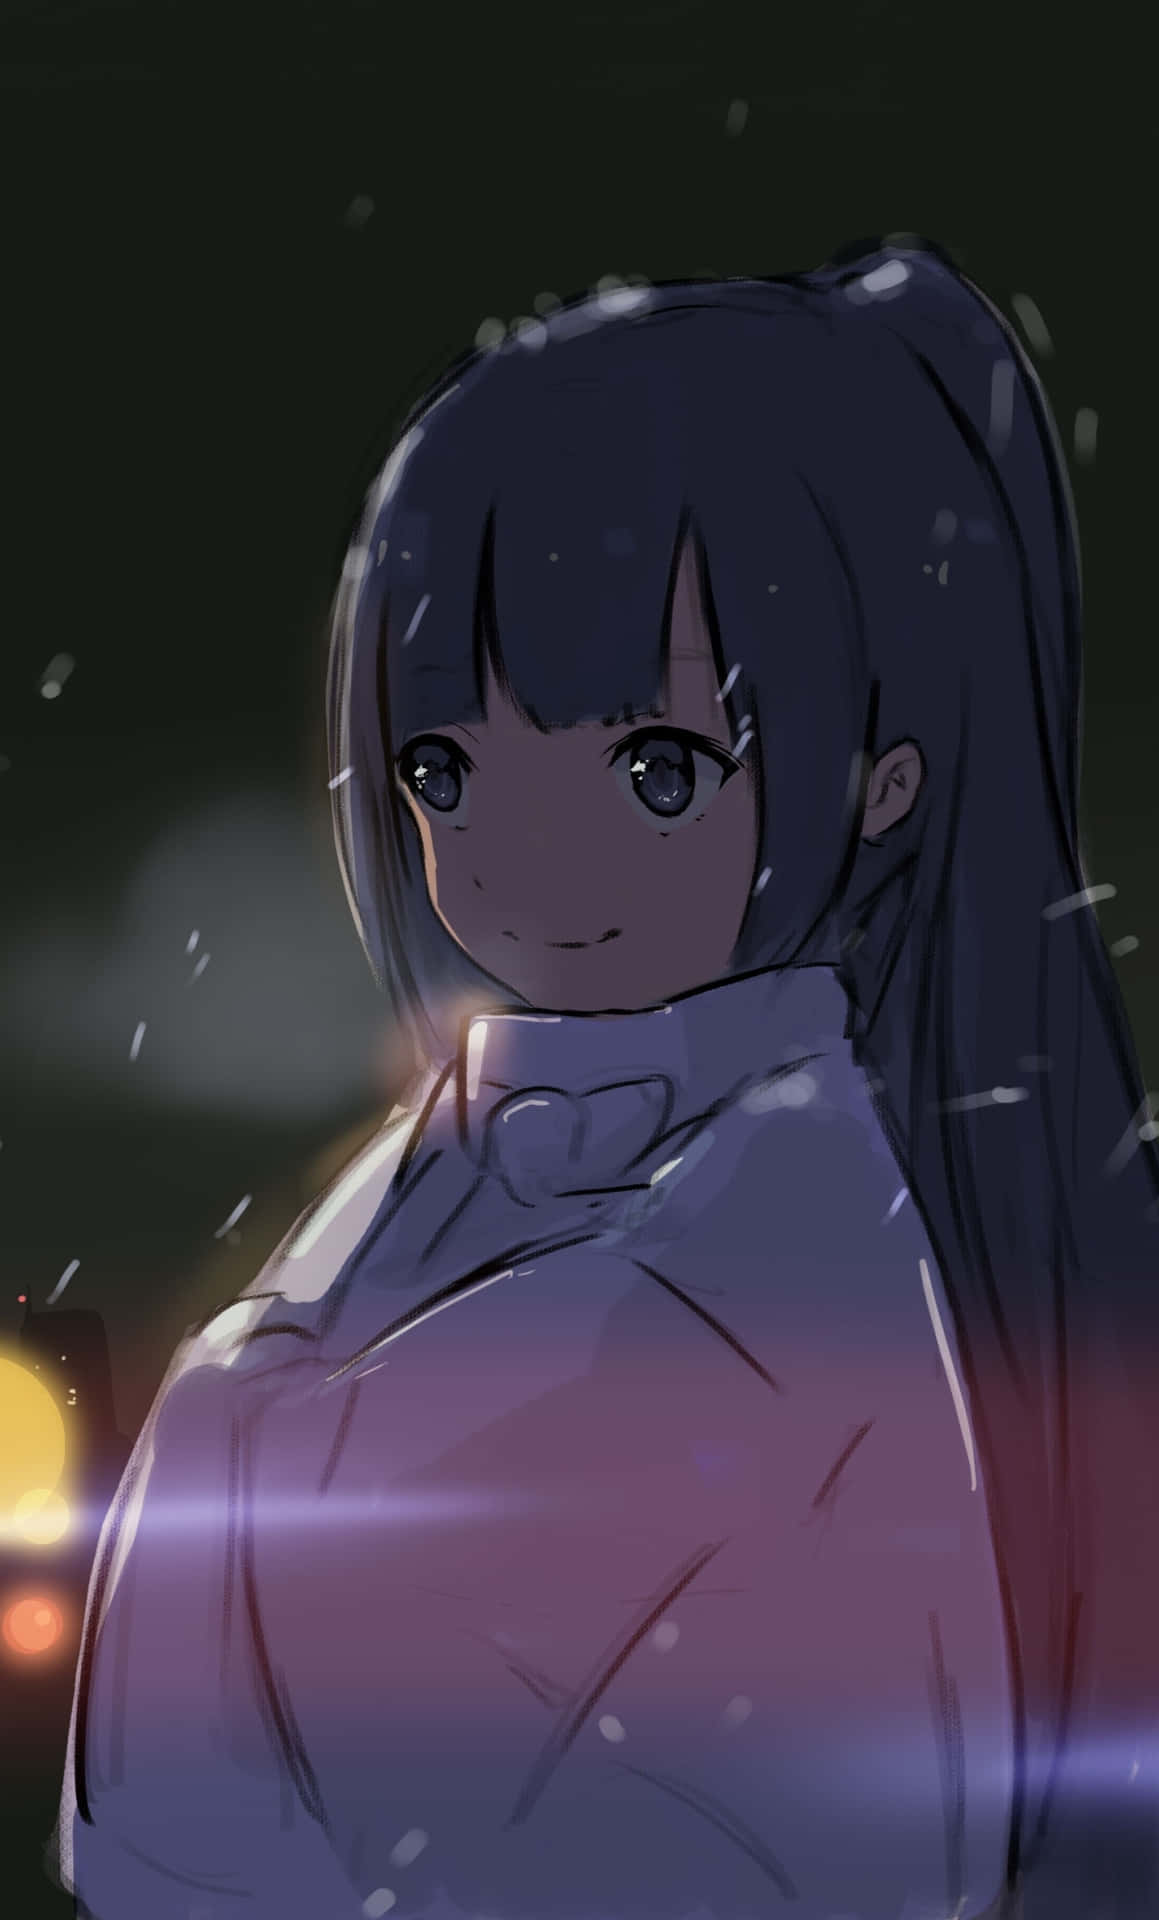 Sweet Anime Girl In The Dark Wallpaper